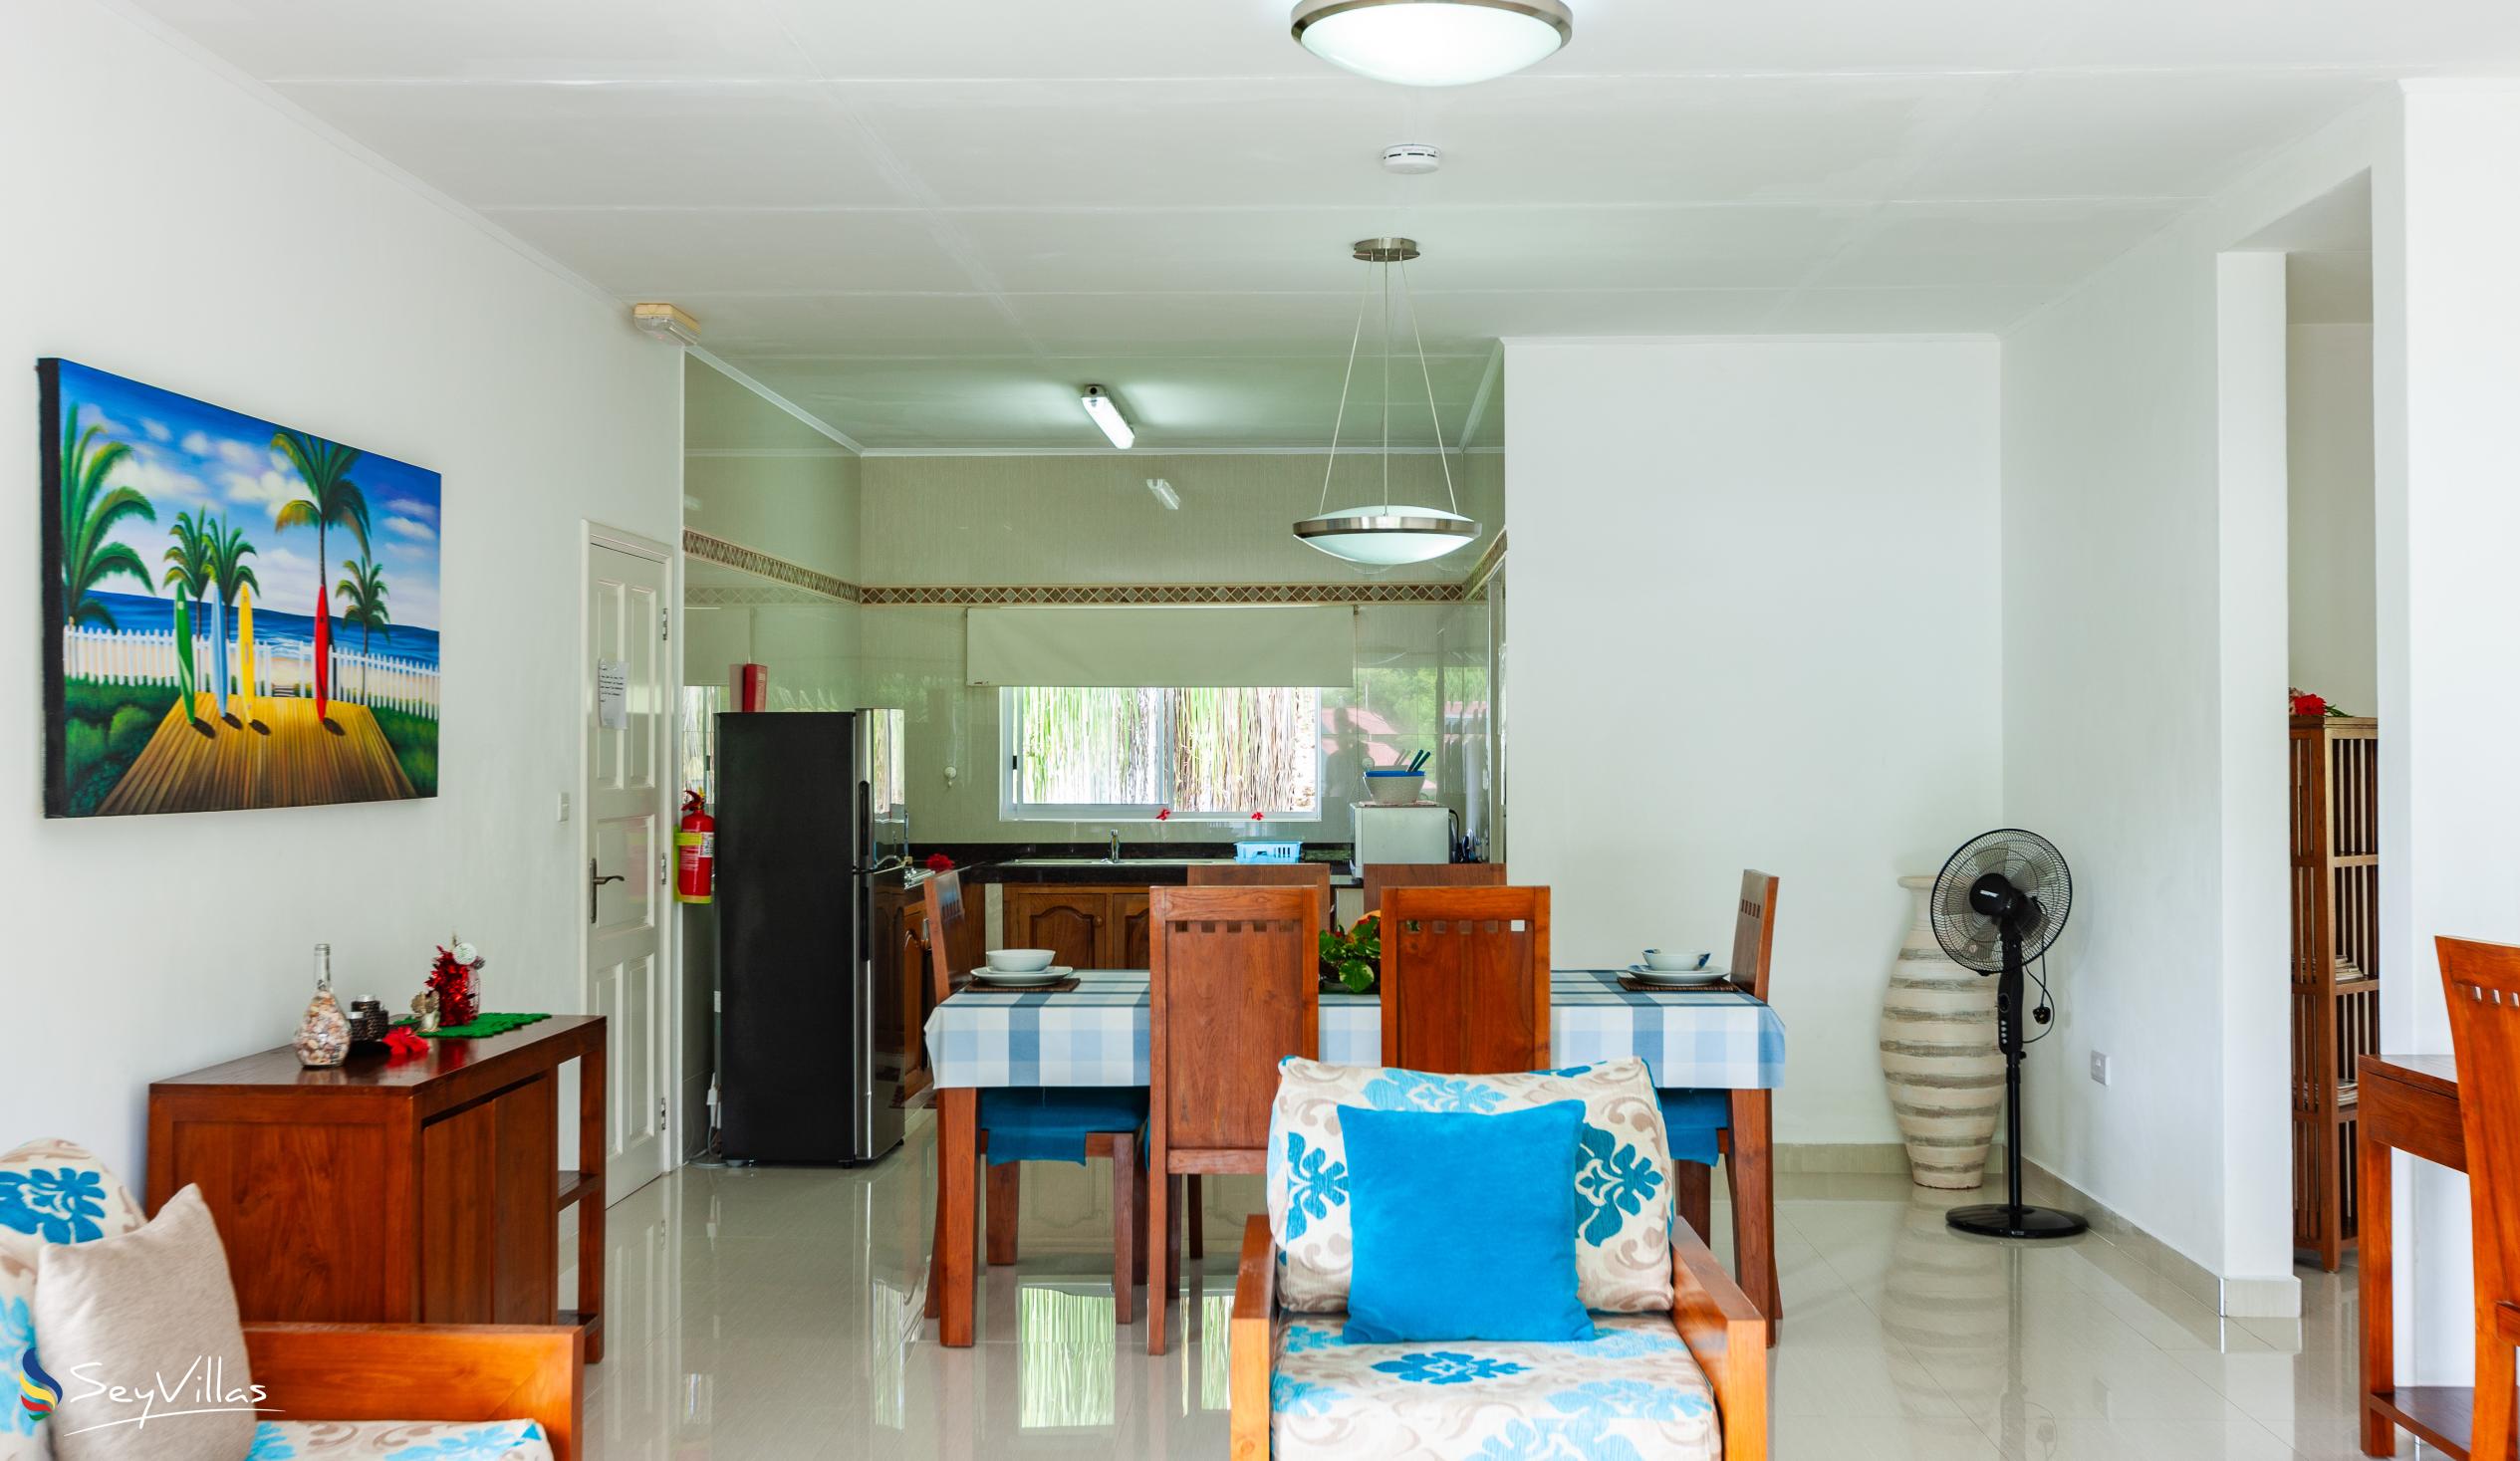 Photo 26: Casa Tara Villas - 2-Bedroom Apartment - Praslin (Seychelles)